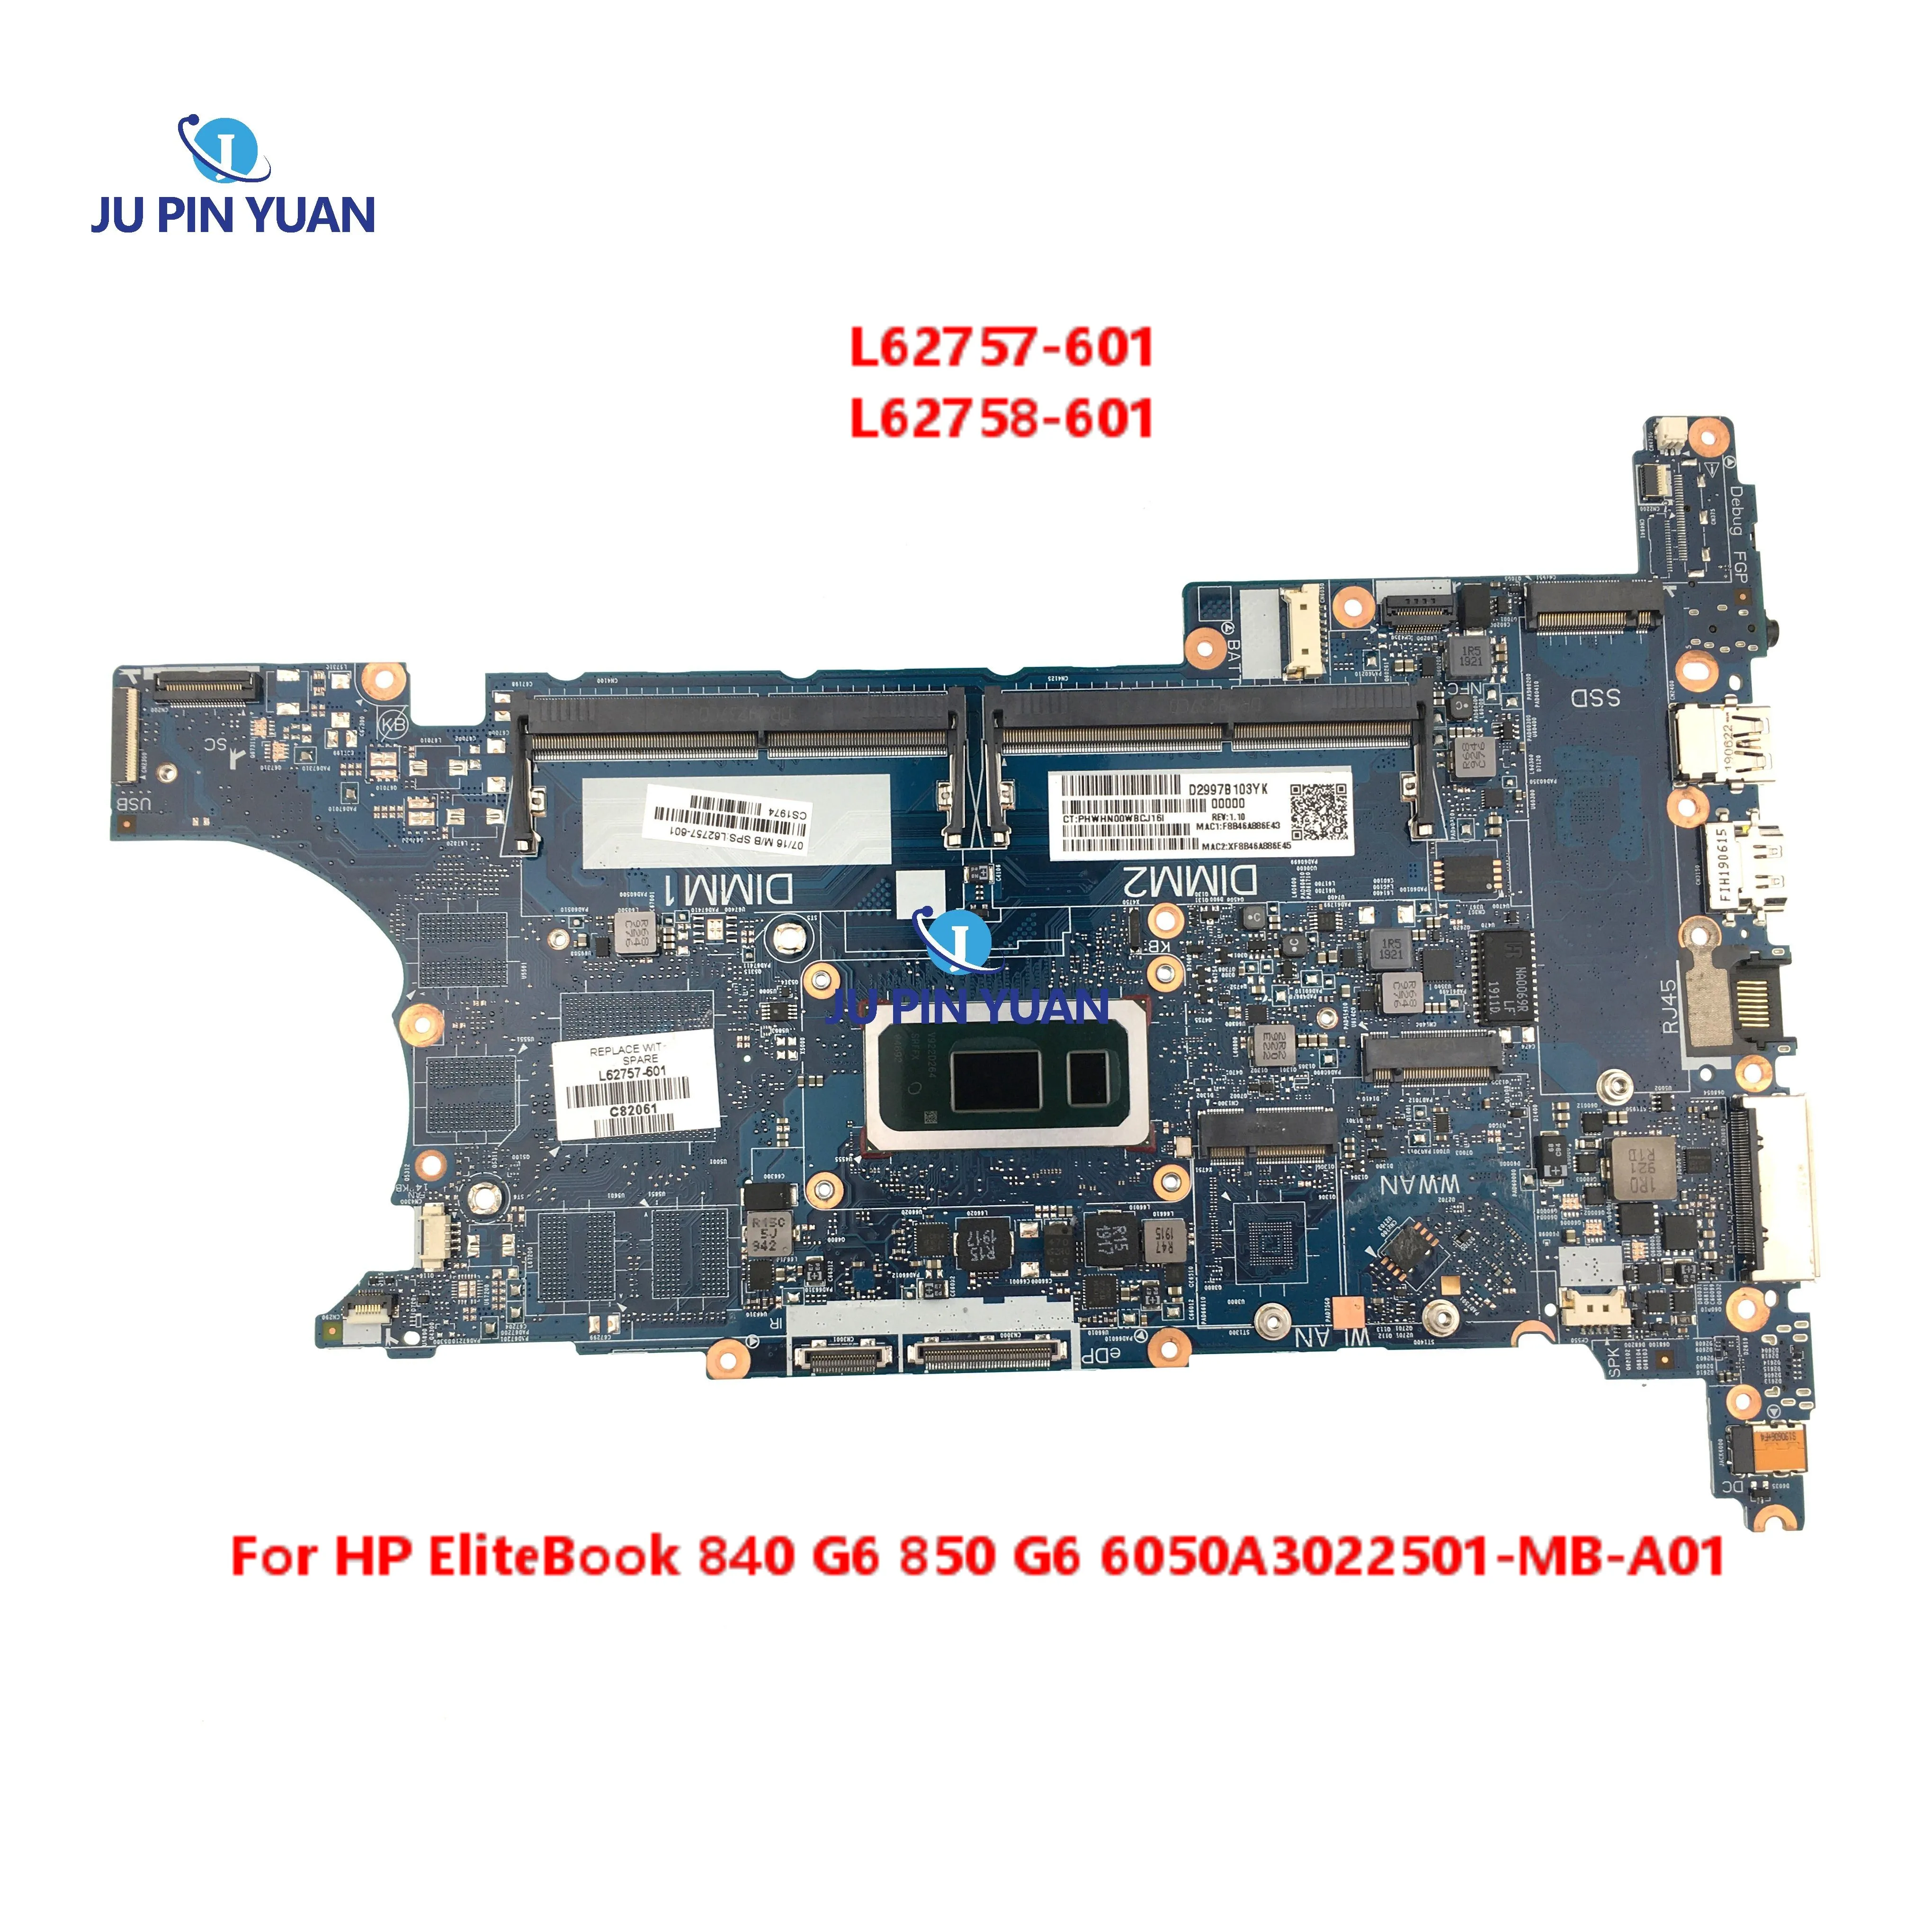 L62757-601 L62758-601 Для HP EliteBook 840 G6 850 G6 Материнская плата ноутбука I5-8265U I7-8565U процессор 6050A3022501-MB-A01 Материнская плата